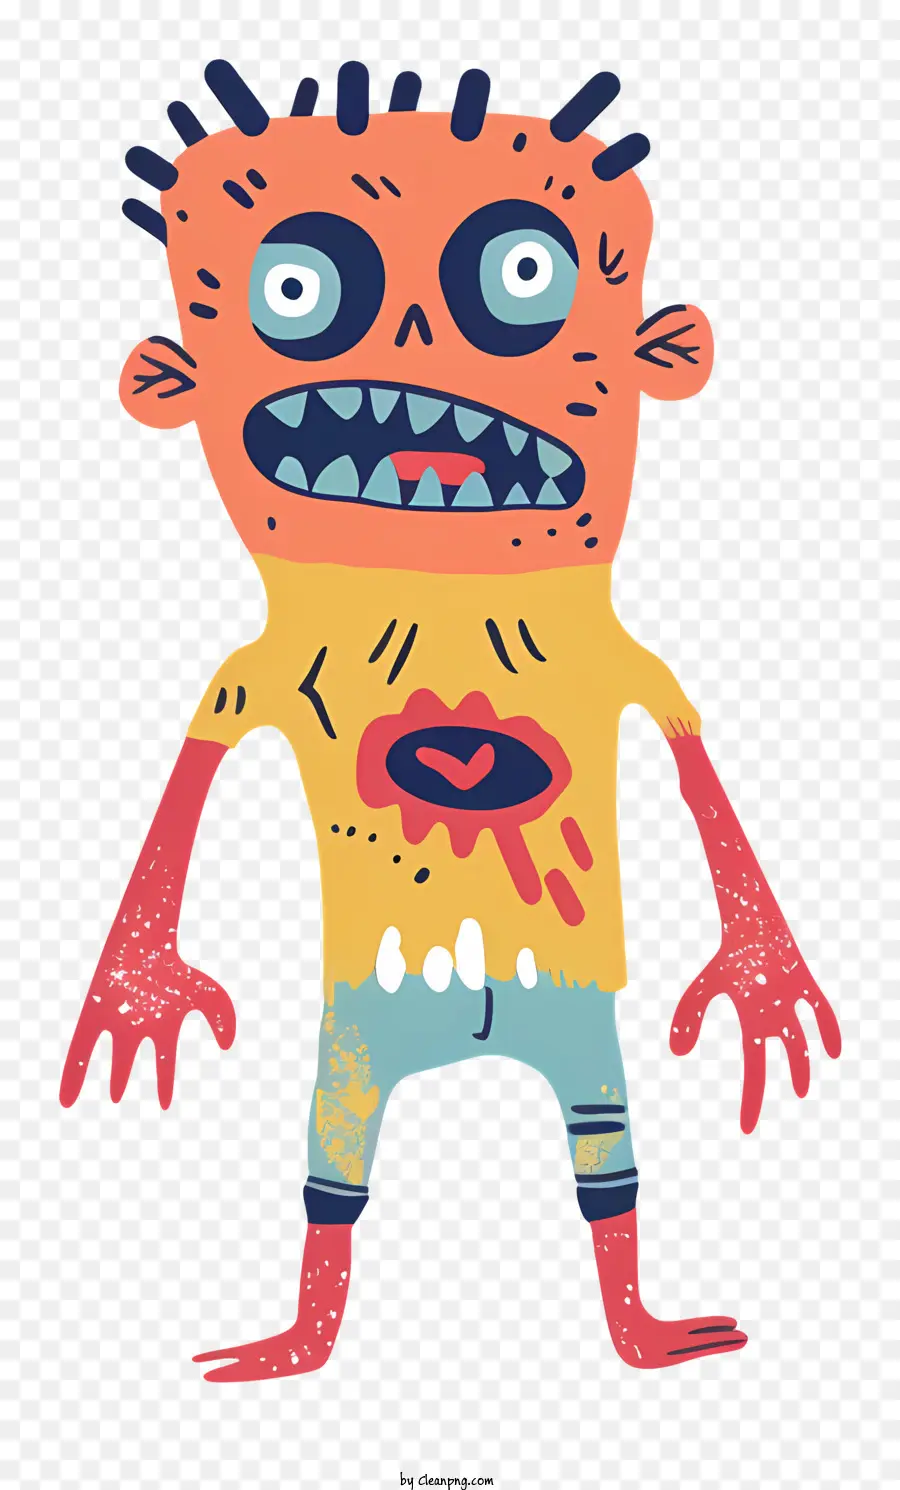 Zombie Cartoon Charakter Friendly Kreatur gruseliges Gesicht hellgelbes Hemd - Freundlicher Charakter mit beängstigendem Gesicht und Action